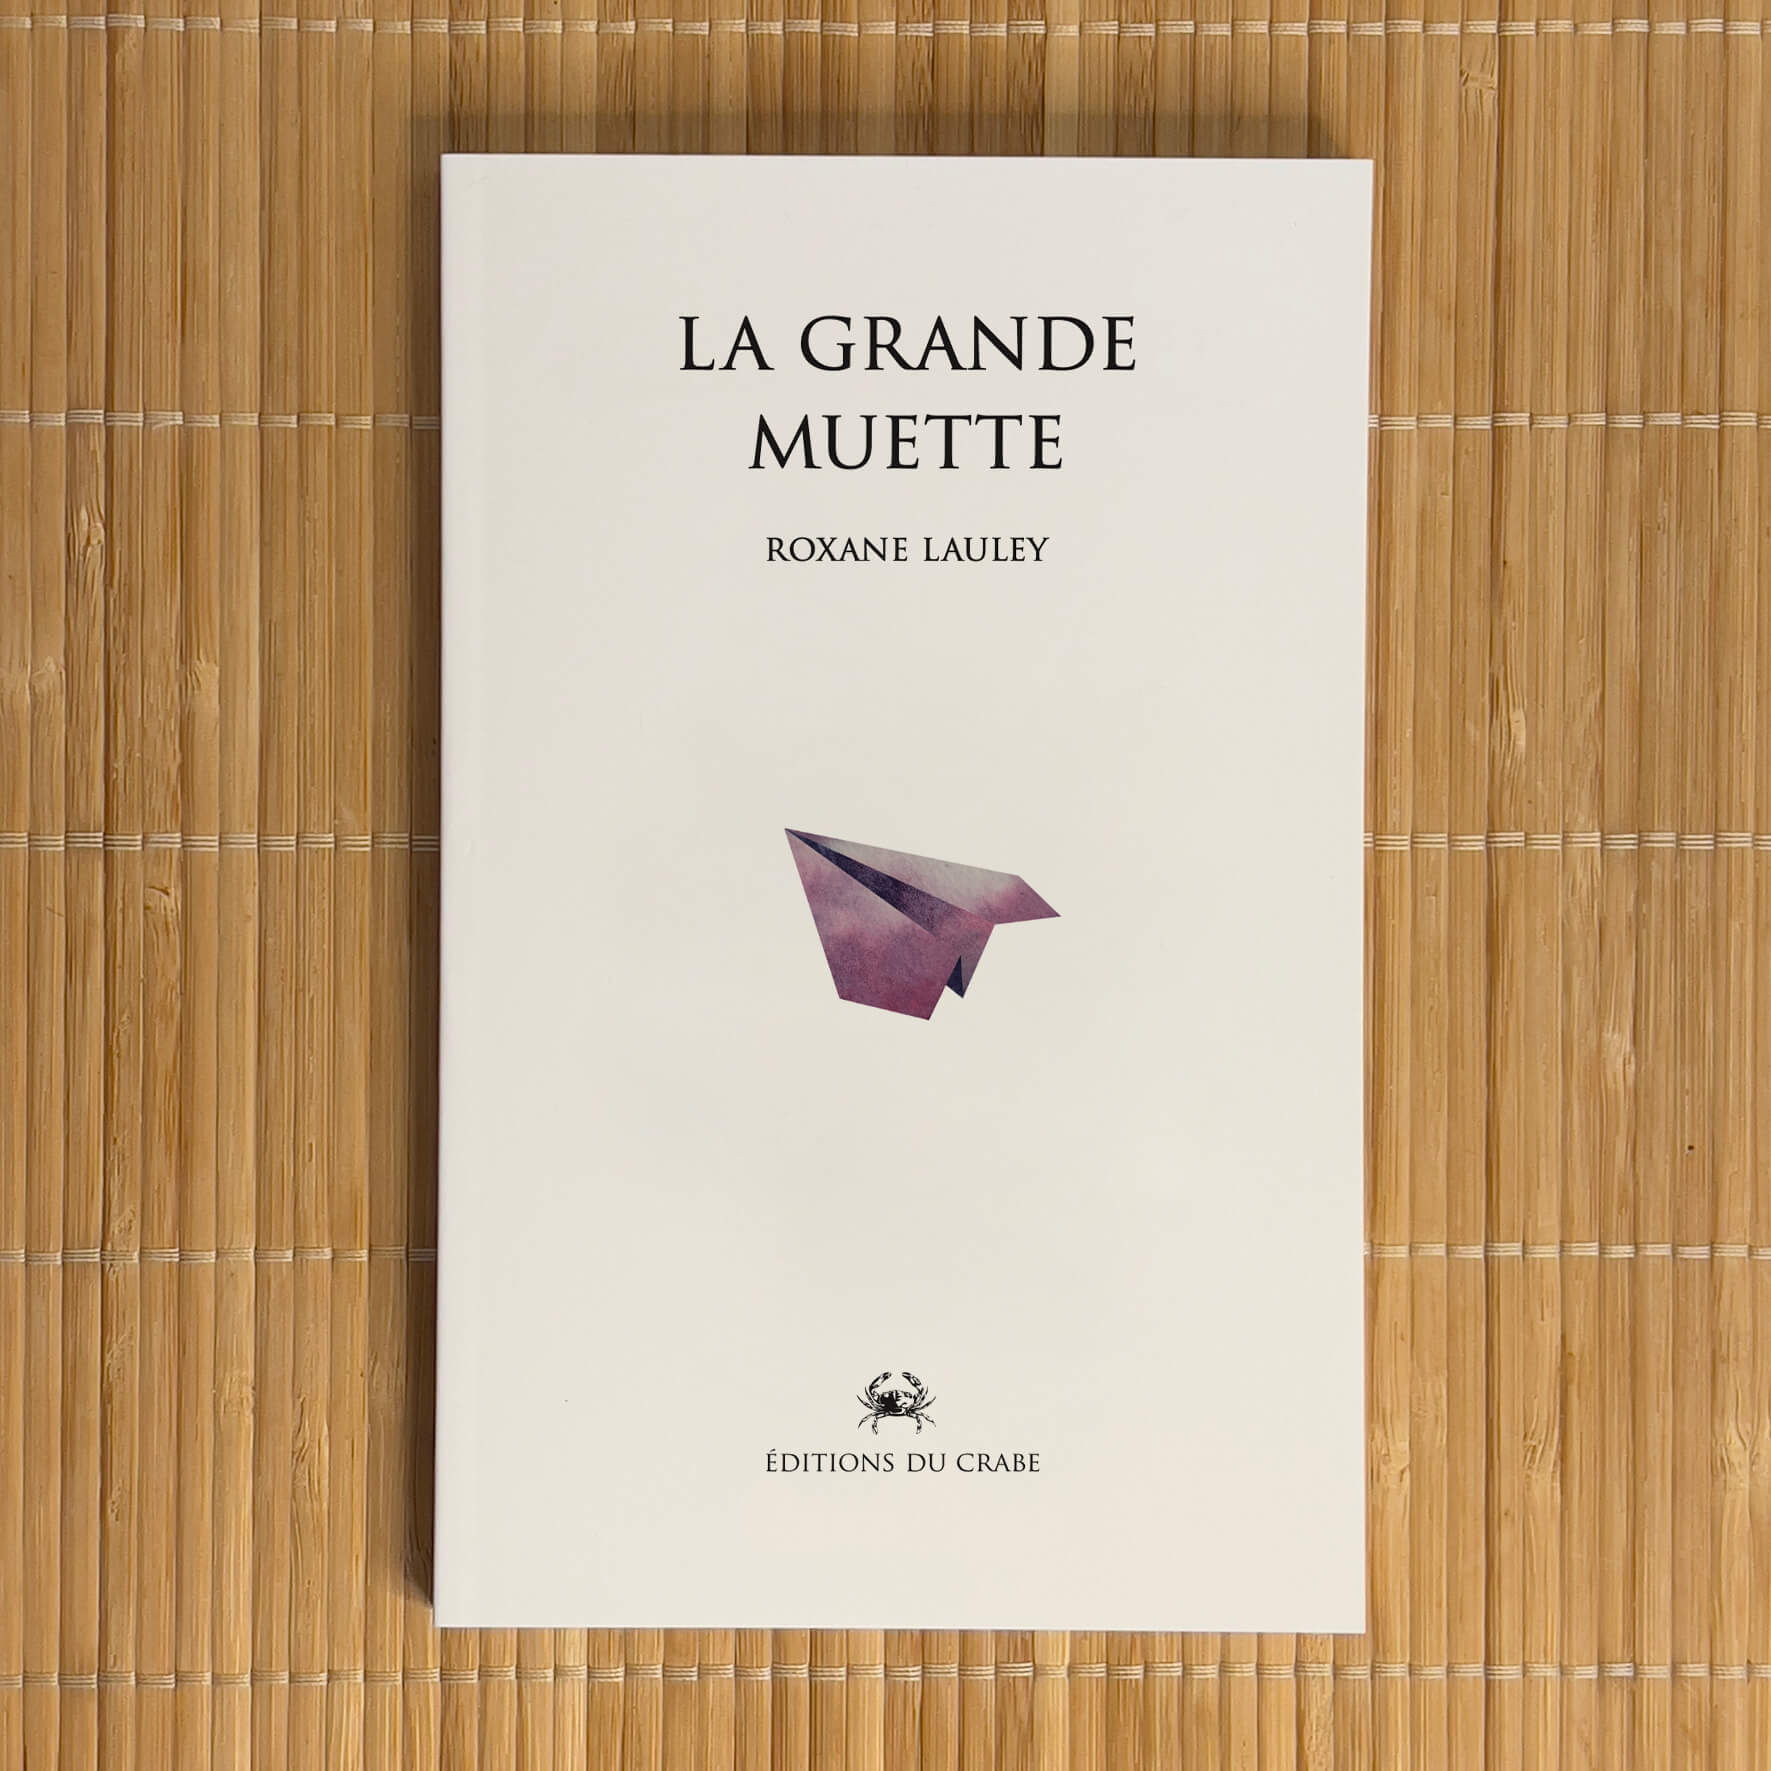 Couverture de La Grande Muette, le premier ouvrage de Roxane Lauley paru aux Editions du Crabe